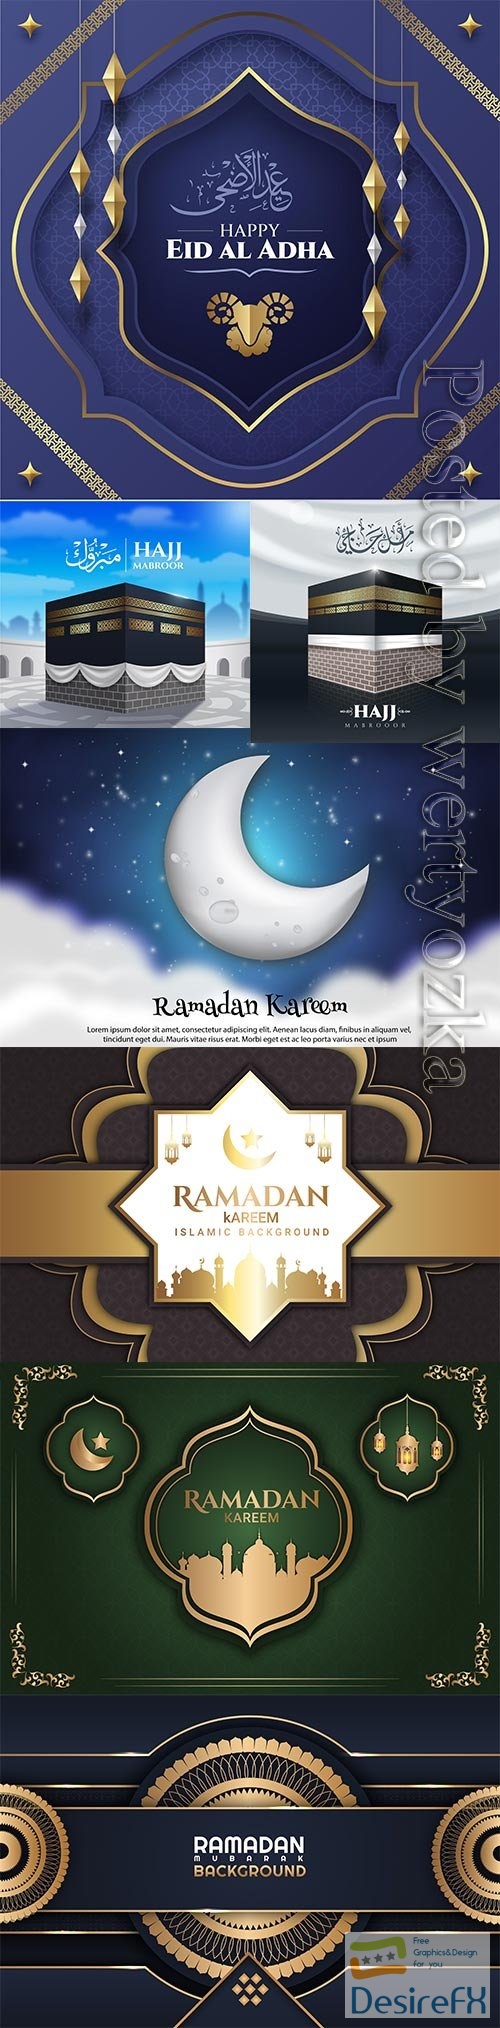 Ramadan kareem, islamic hajj pilgrimage vector illustration